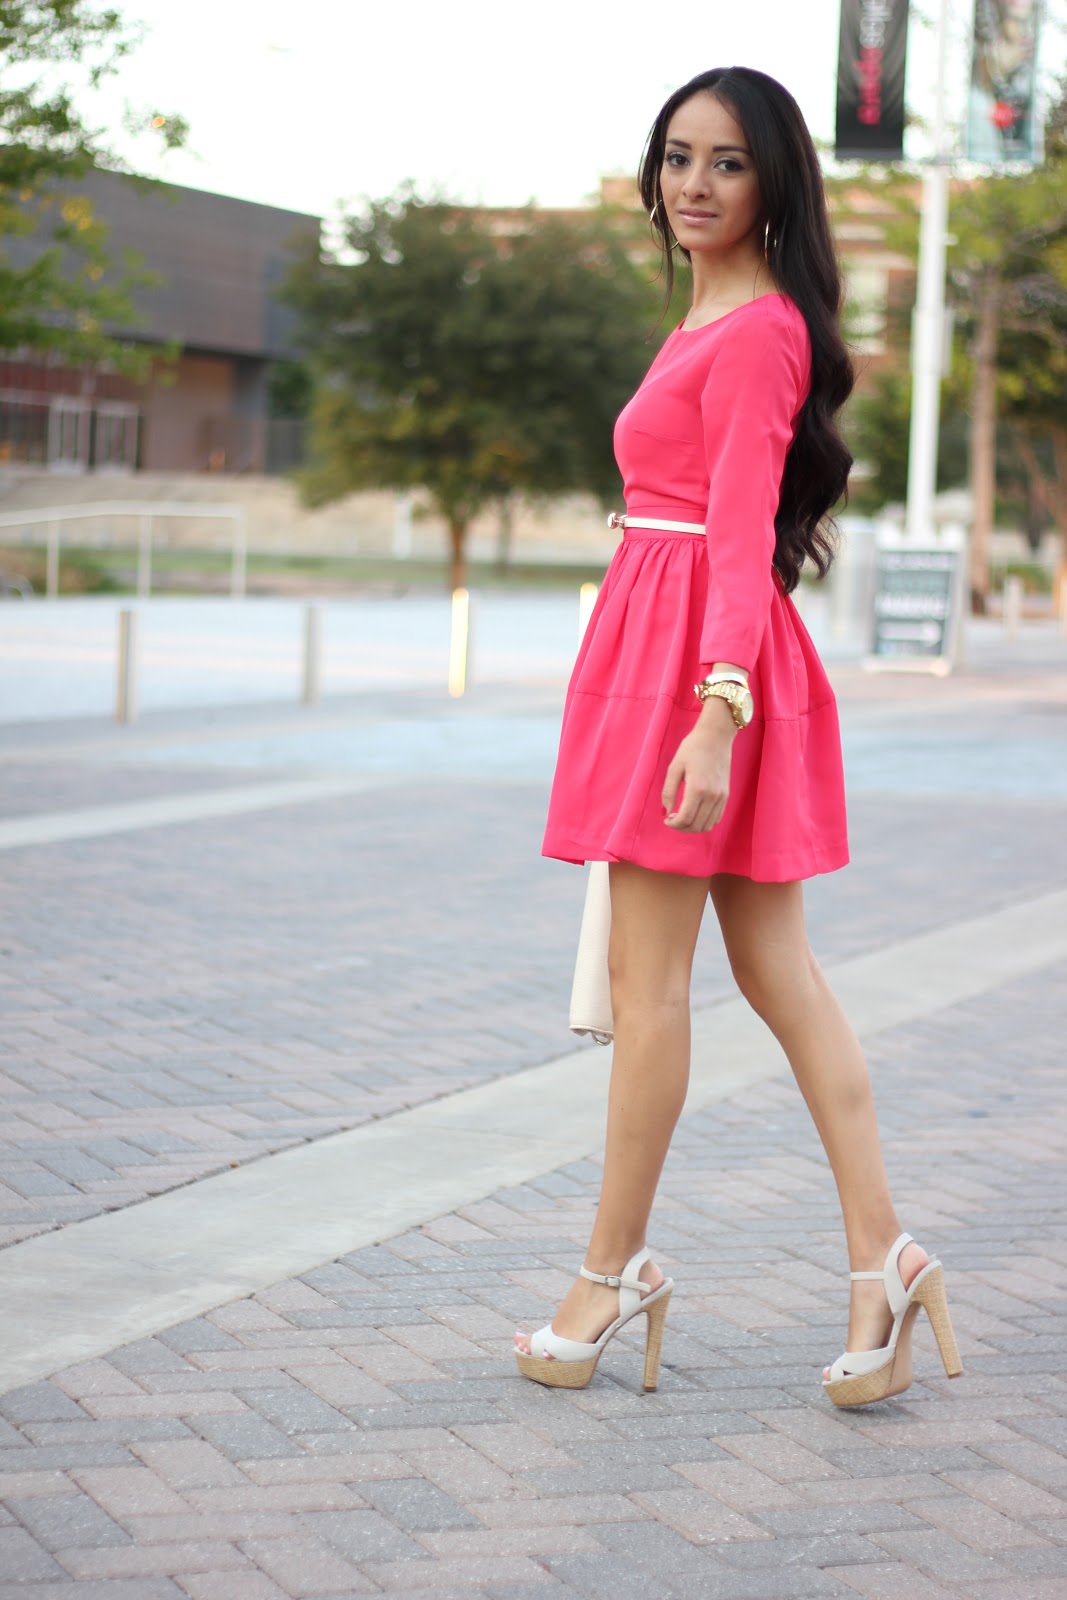 The Little Pink Dress